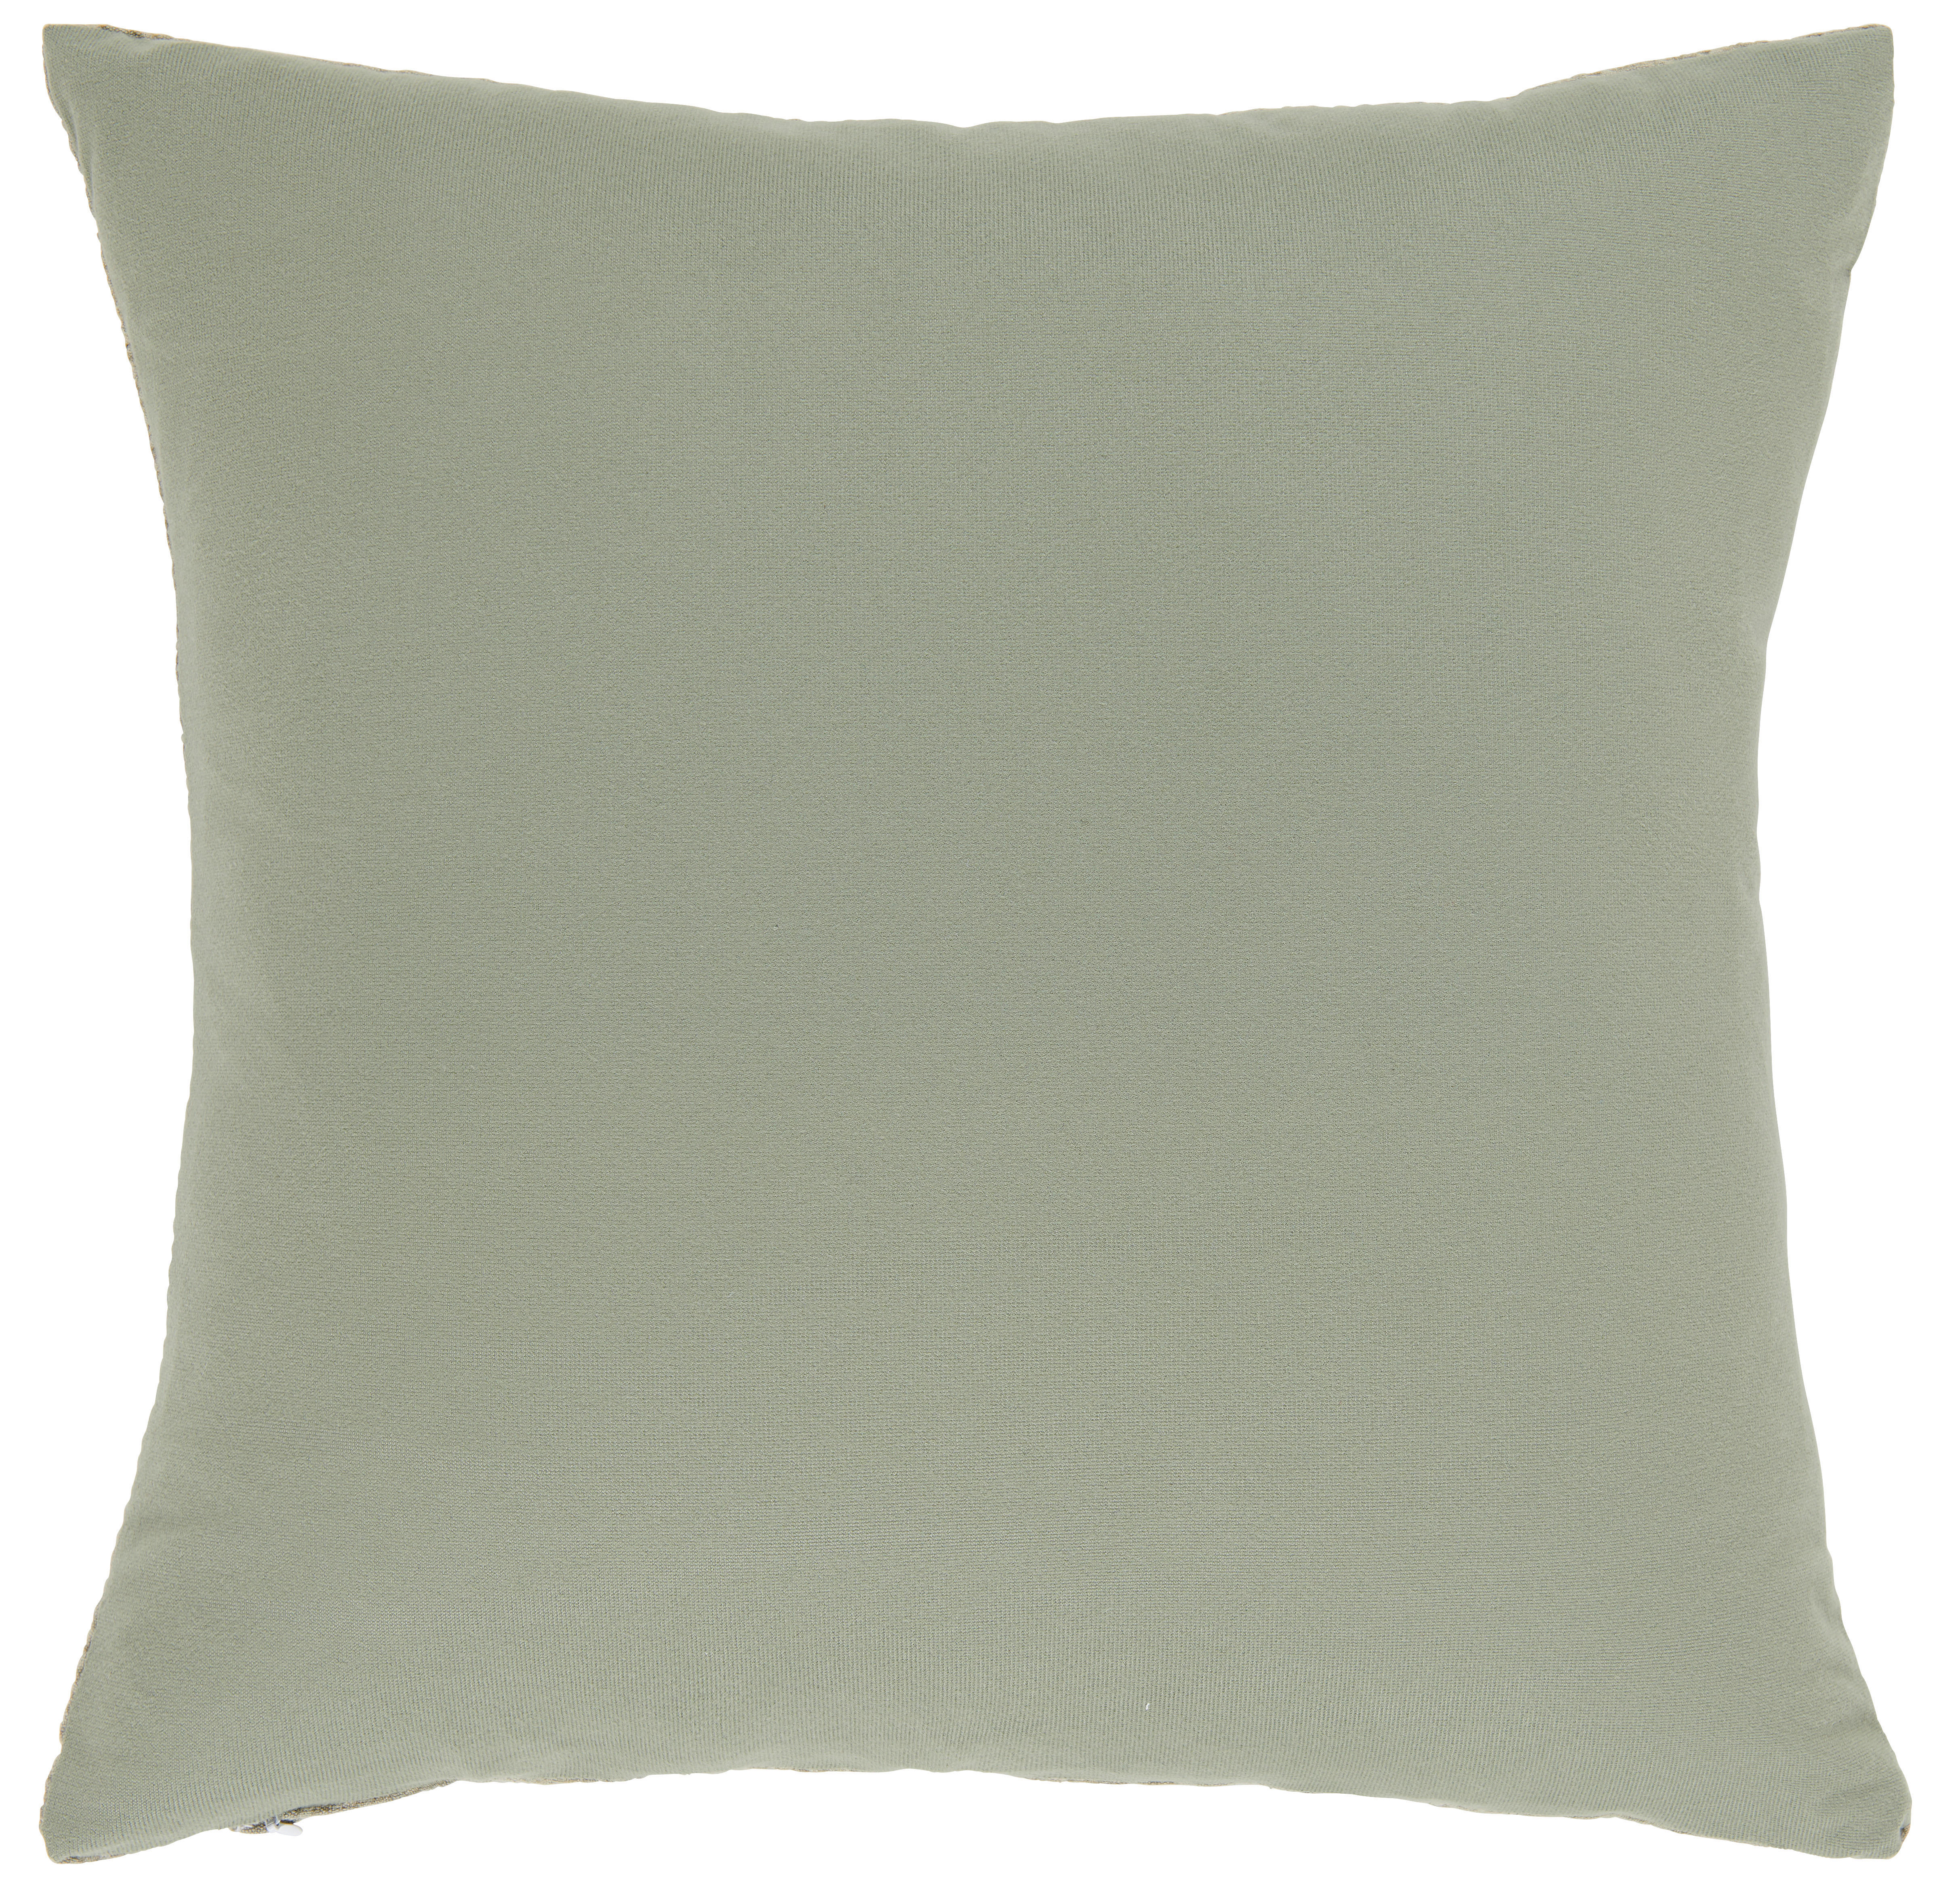 PRYDNADSKUDDE 45/45 cm  - grön, Klassisk, textil (45/45cm) - Esposa